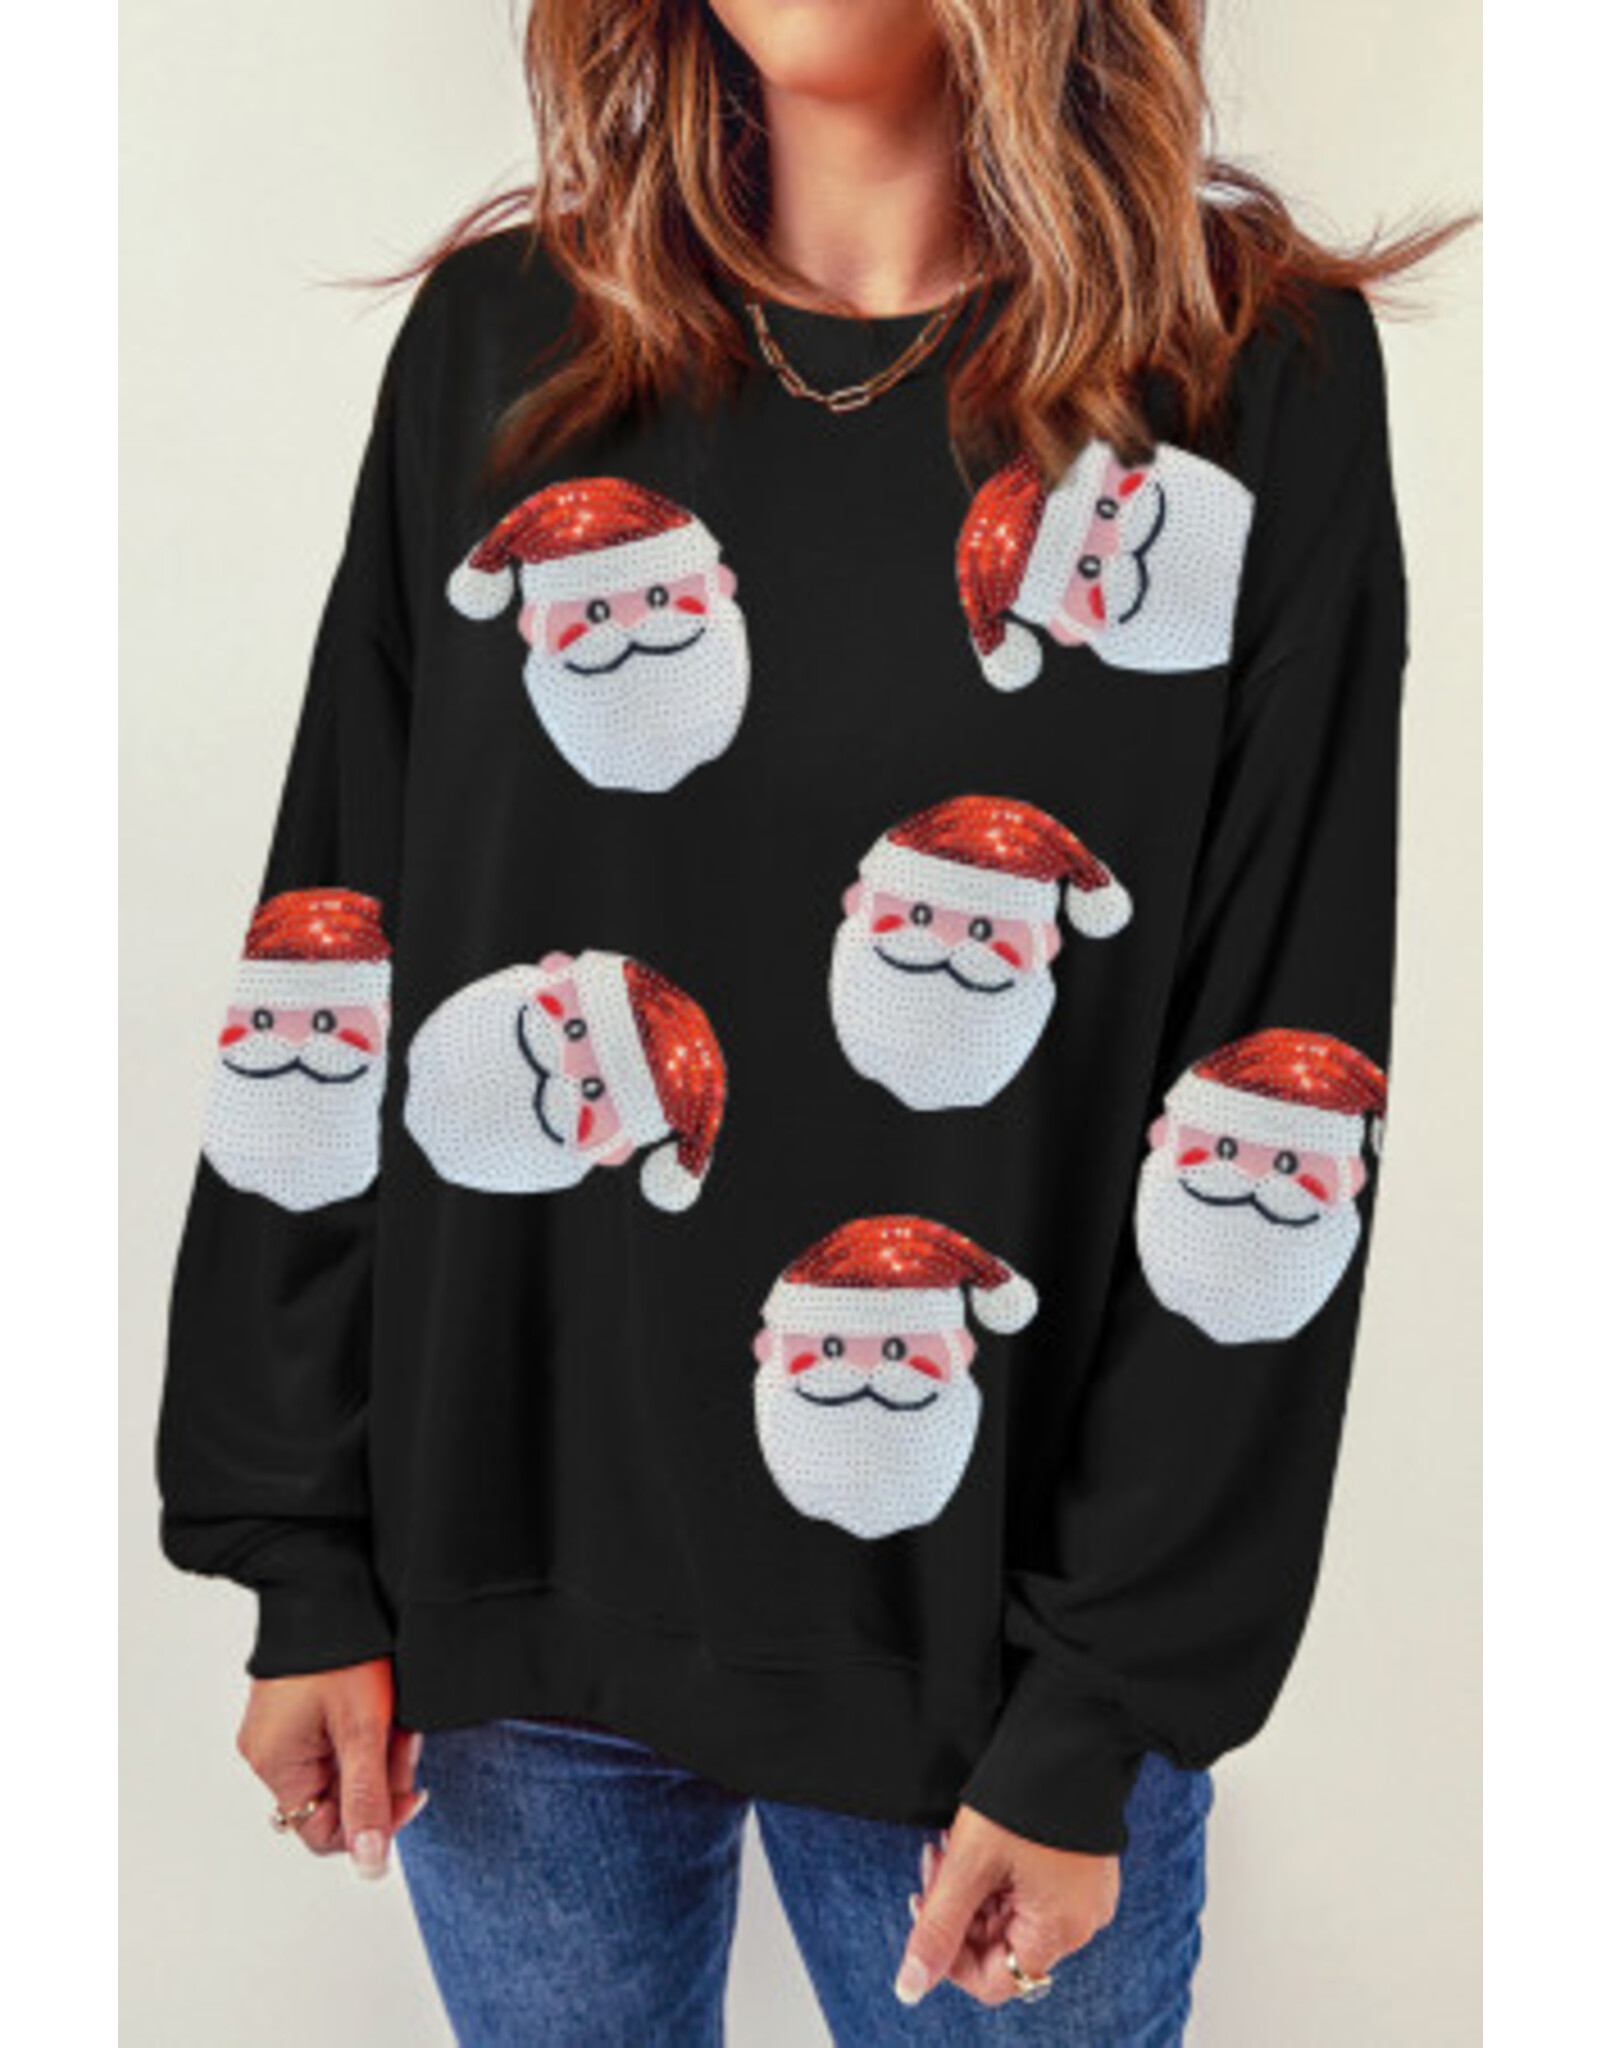 The Ritzy Gypsy Santa Sequin Sweatshirt